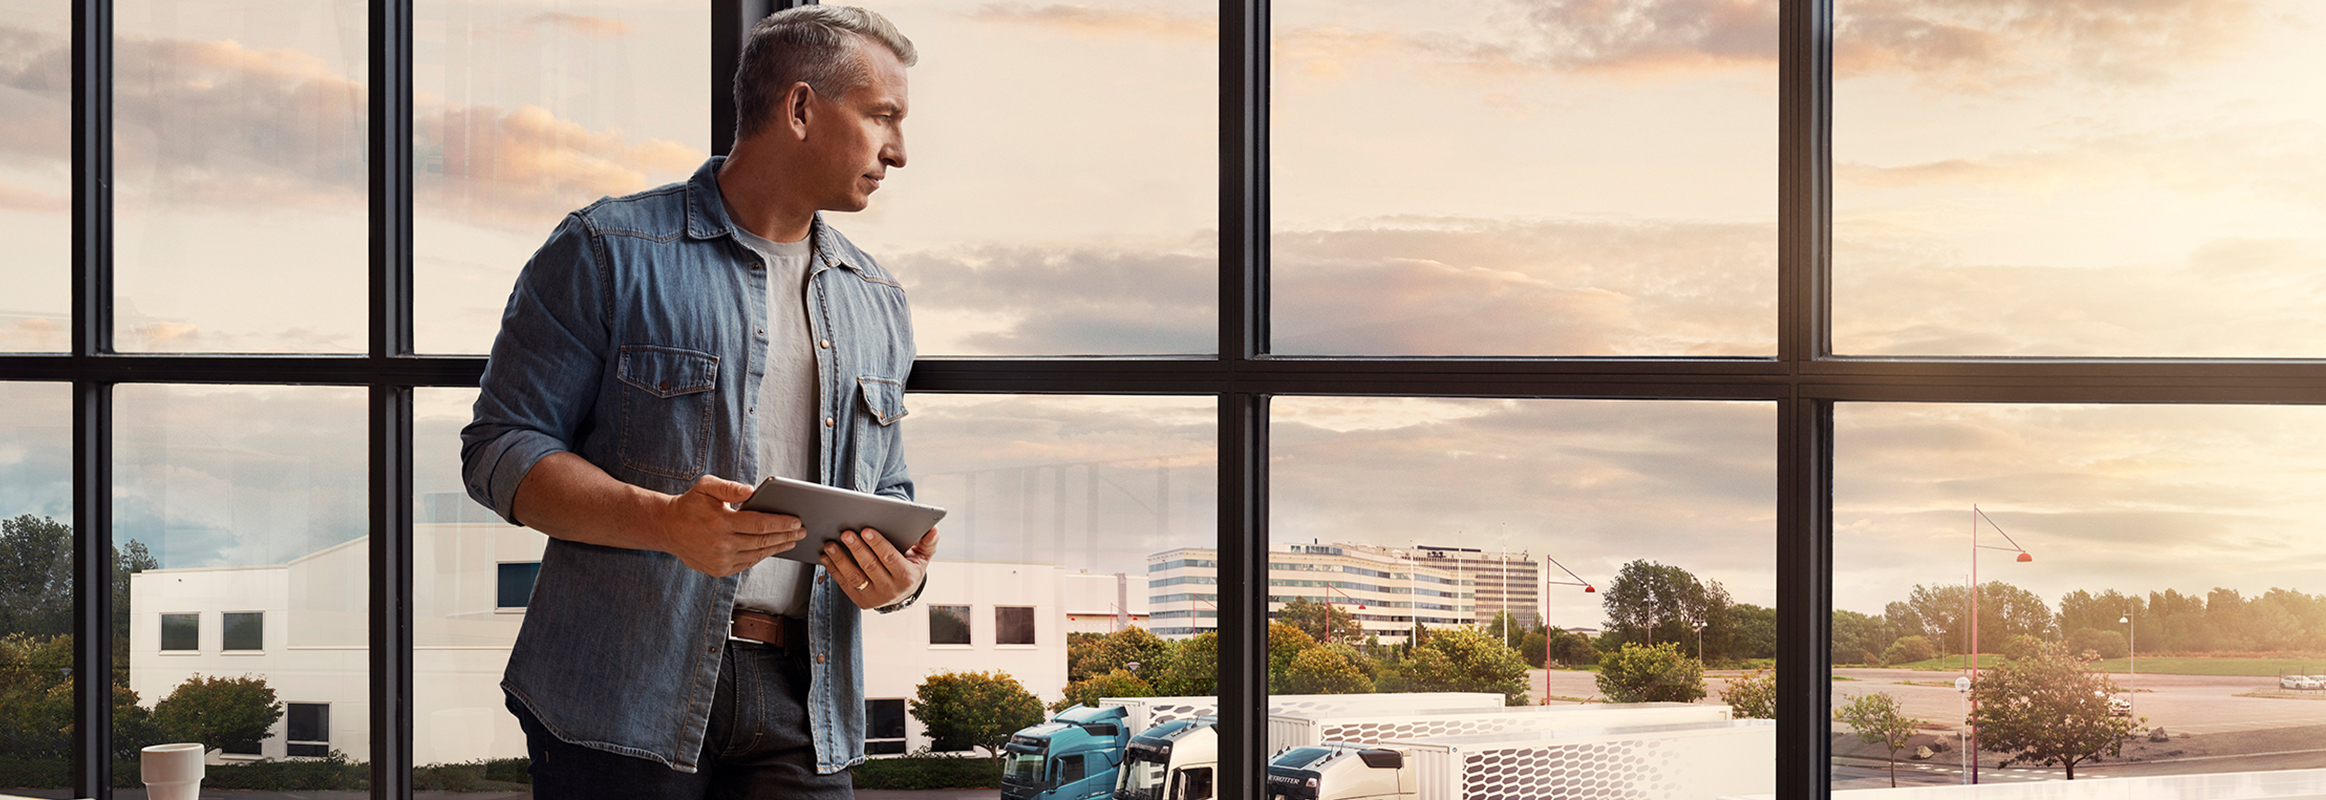 Човек кој држи таблет стои покрај прозорецот и гледа надолу кон возниот парк од камиони